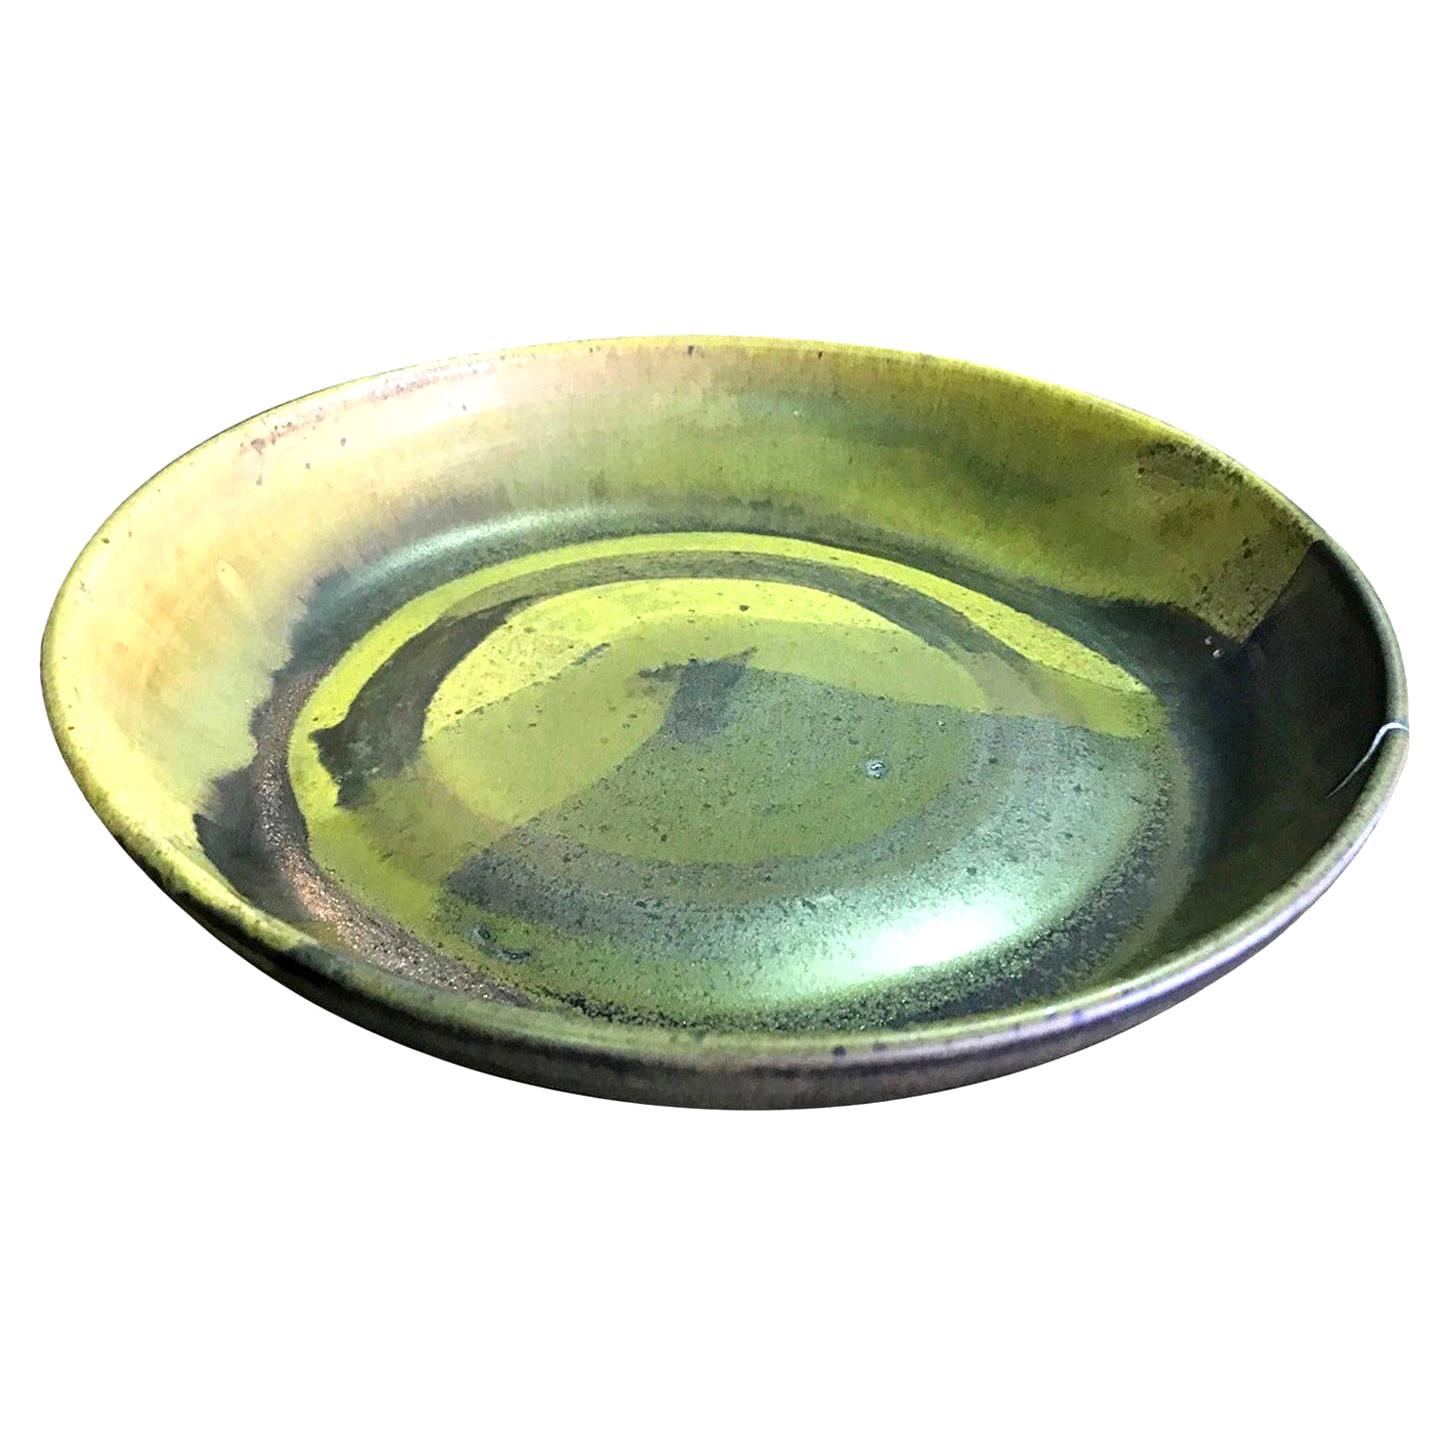 Toshiko Takaezu Signed Mid-Century Modern Japanese Glazed Ceramic Pottery Bowl